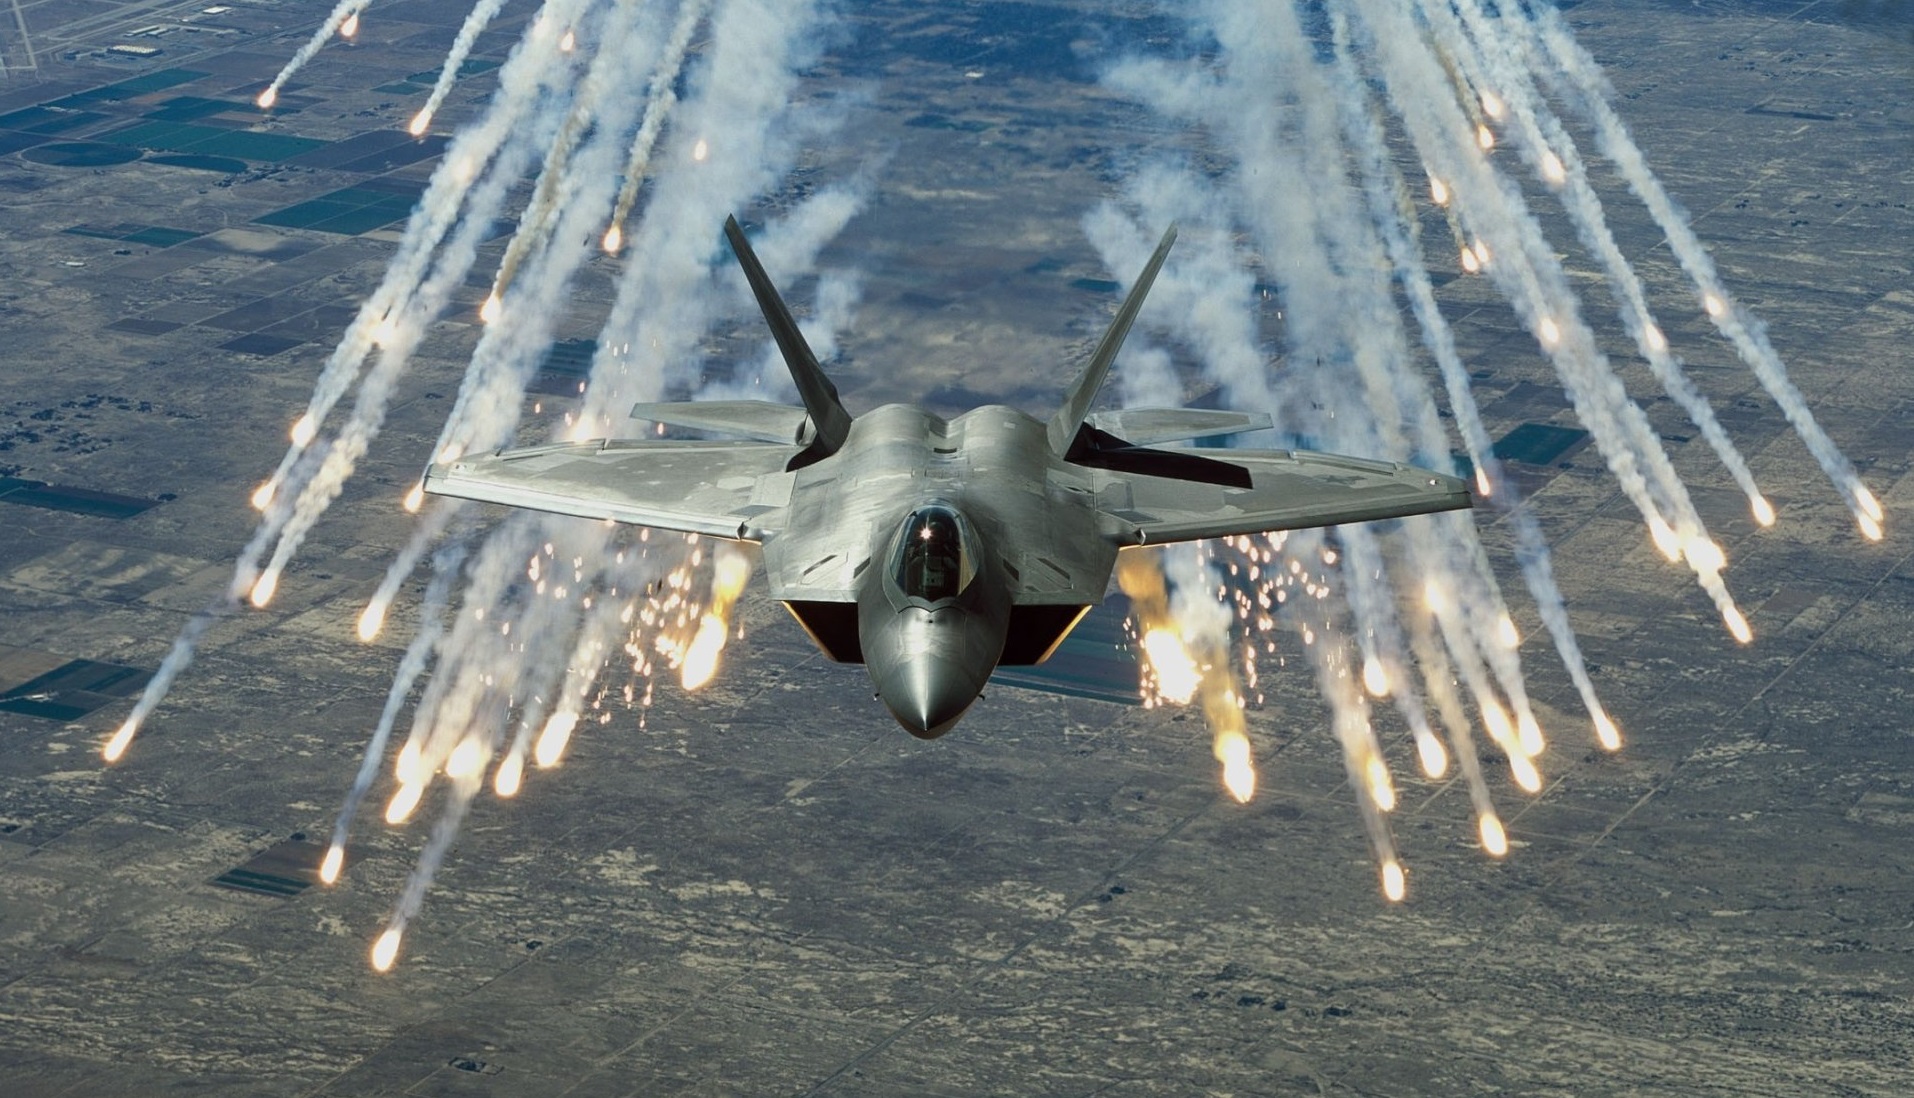 USA chce zezłomować F-22 Raptor, aby uwolnić budżet na myśliwiec nowej generacji, który będzie kosztował setki milionów dolarów